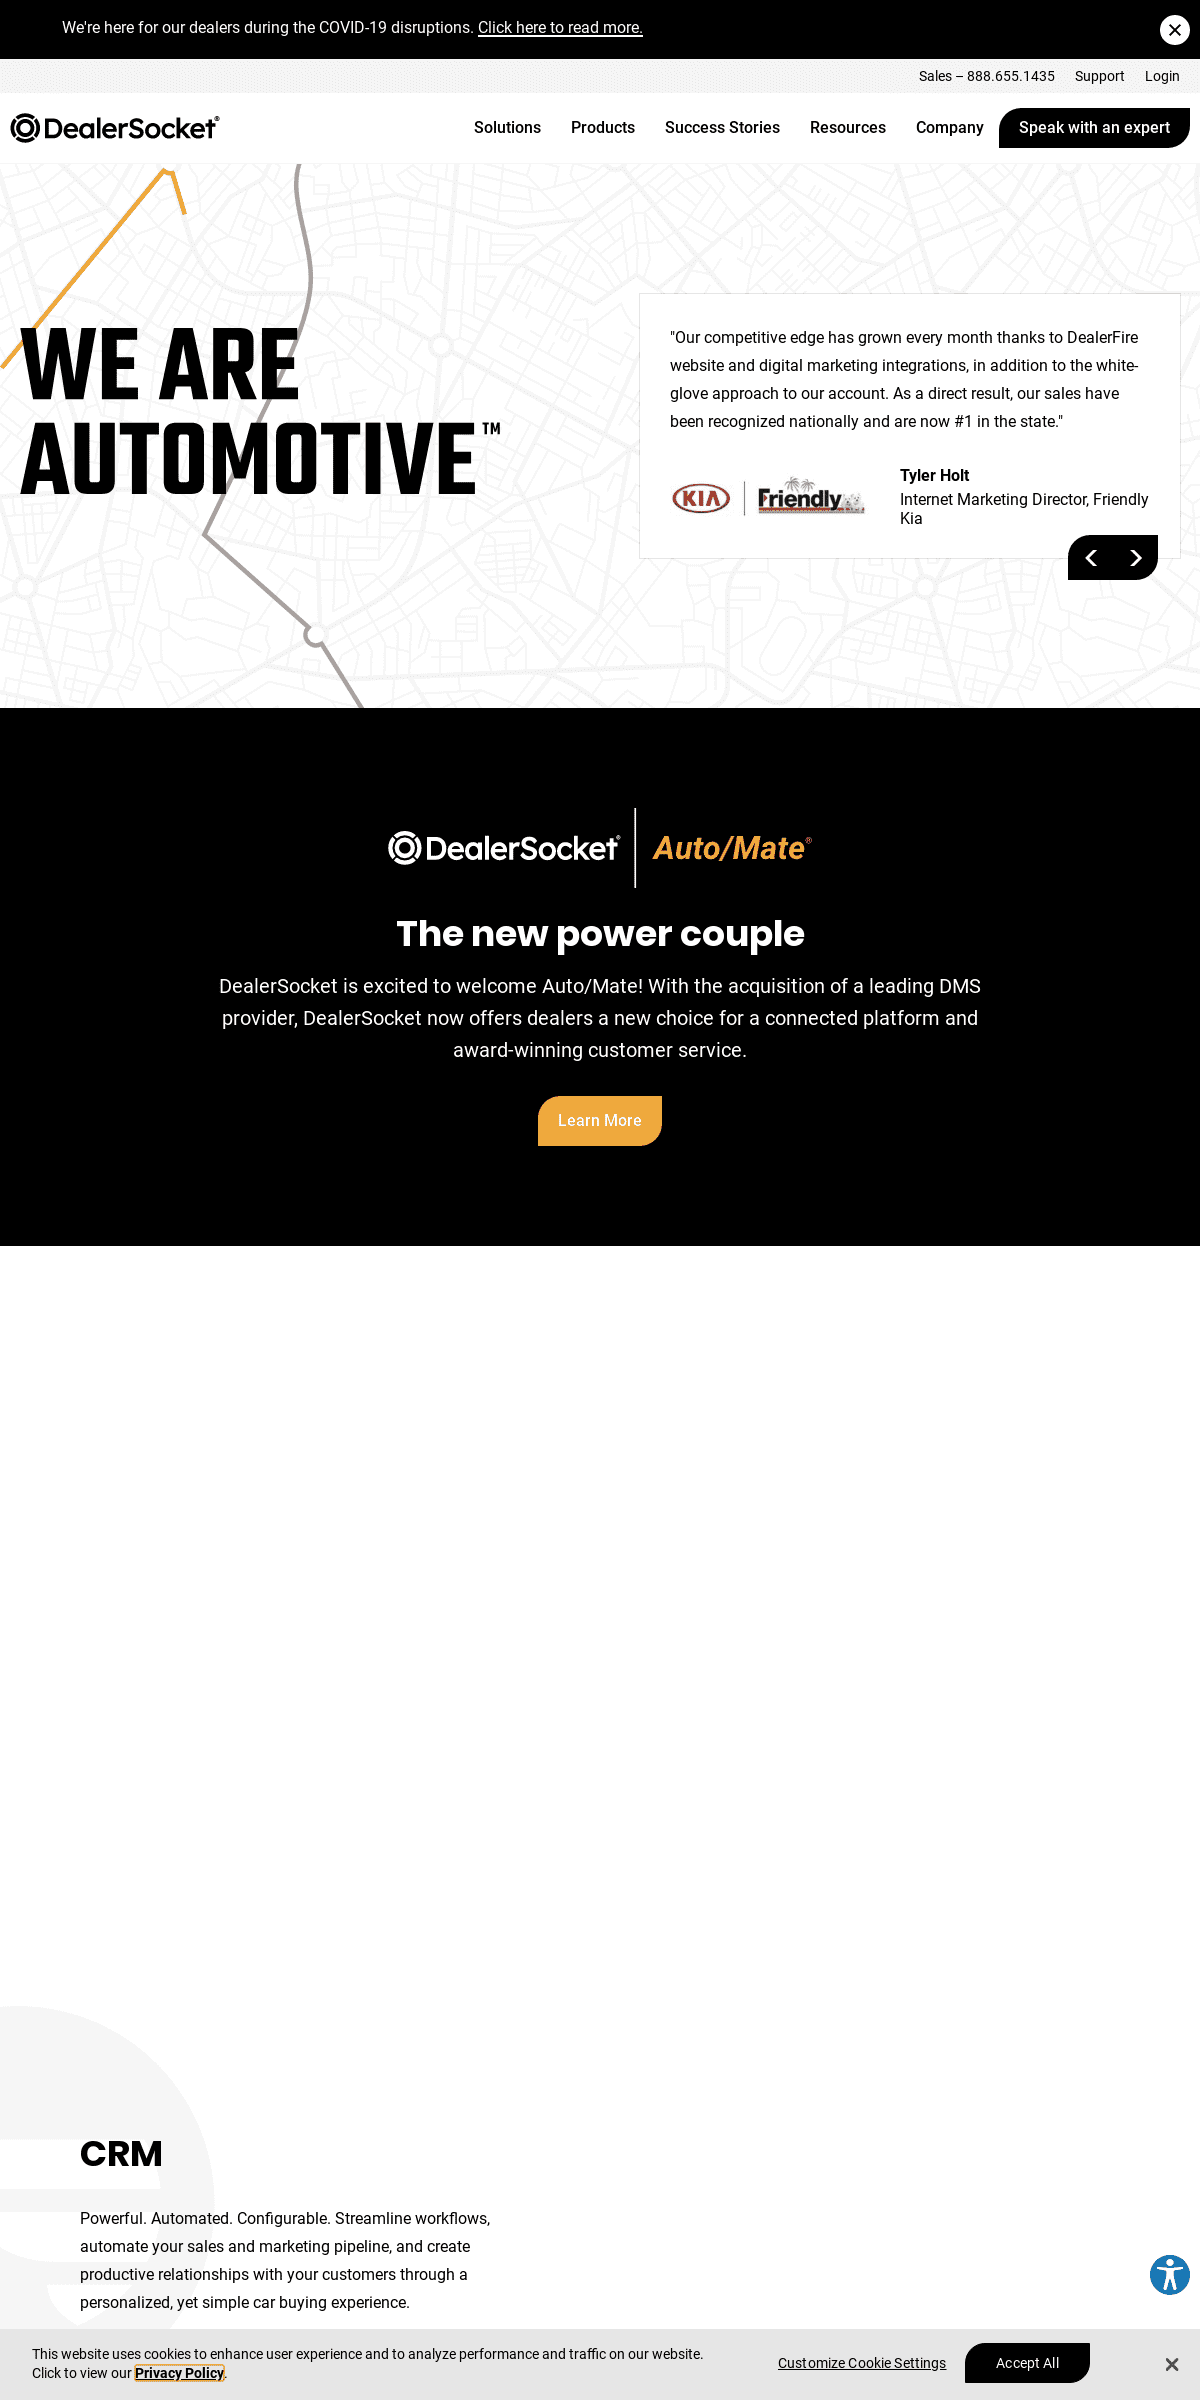 A complete backup of dealersocket.com